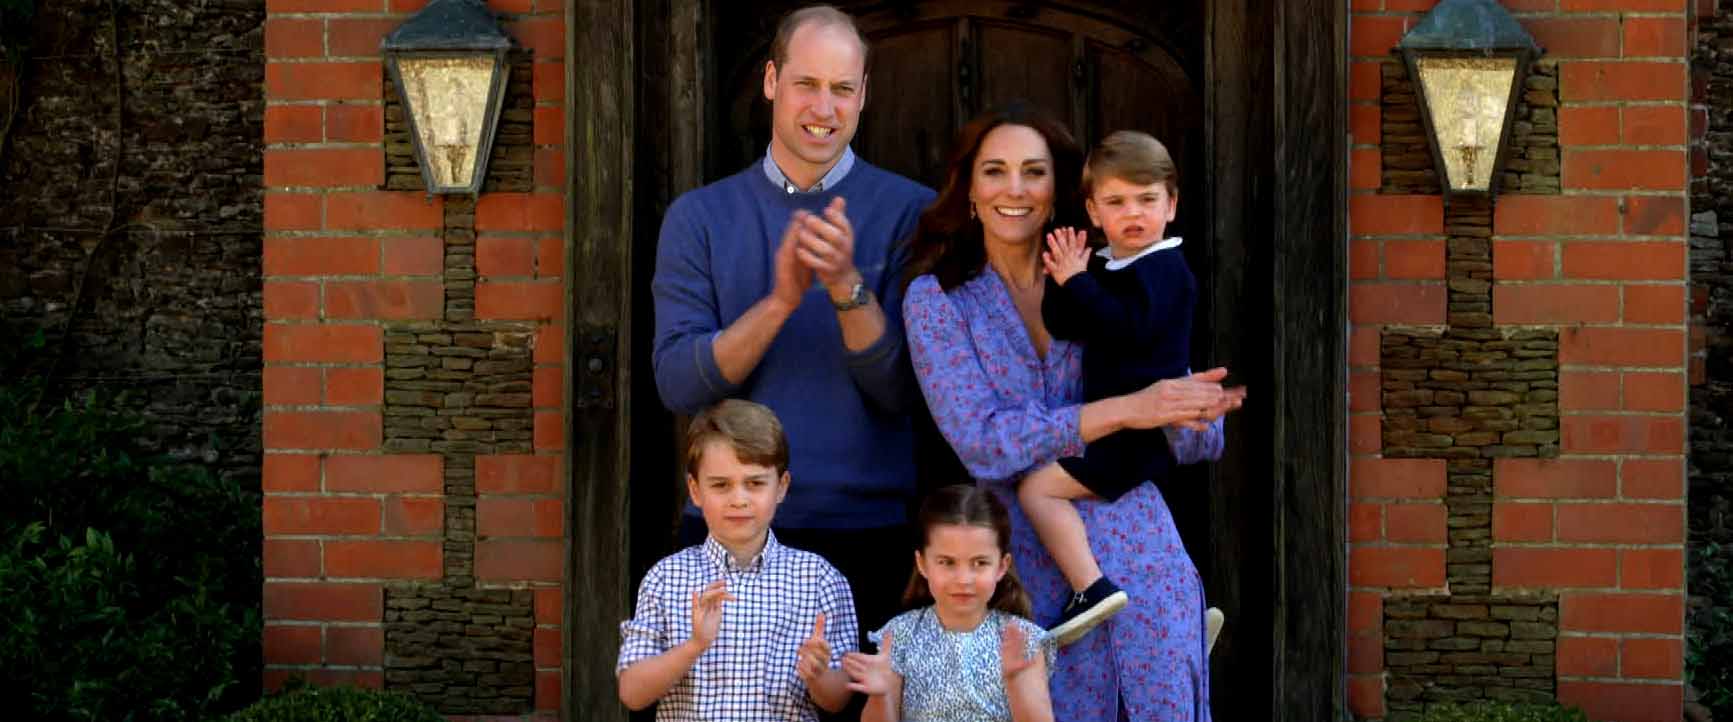 William Kate Middleton: A Royal Family Photo Album | Entertainment